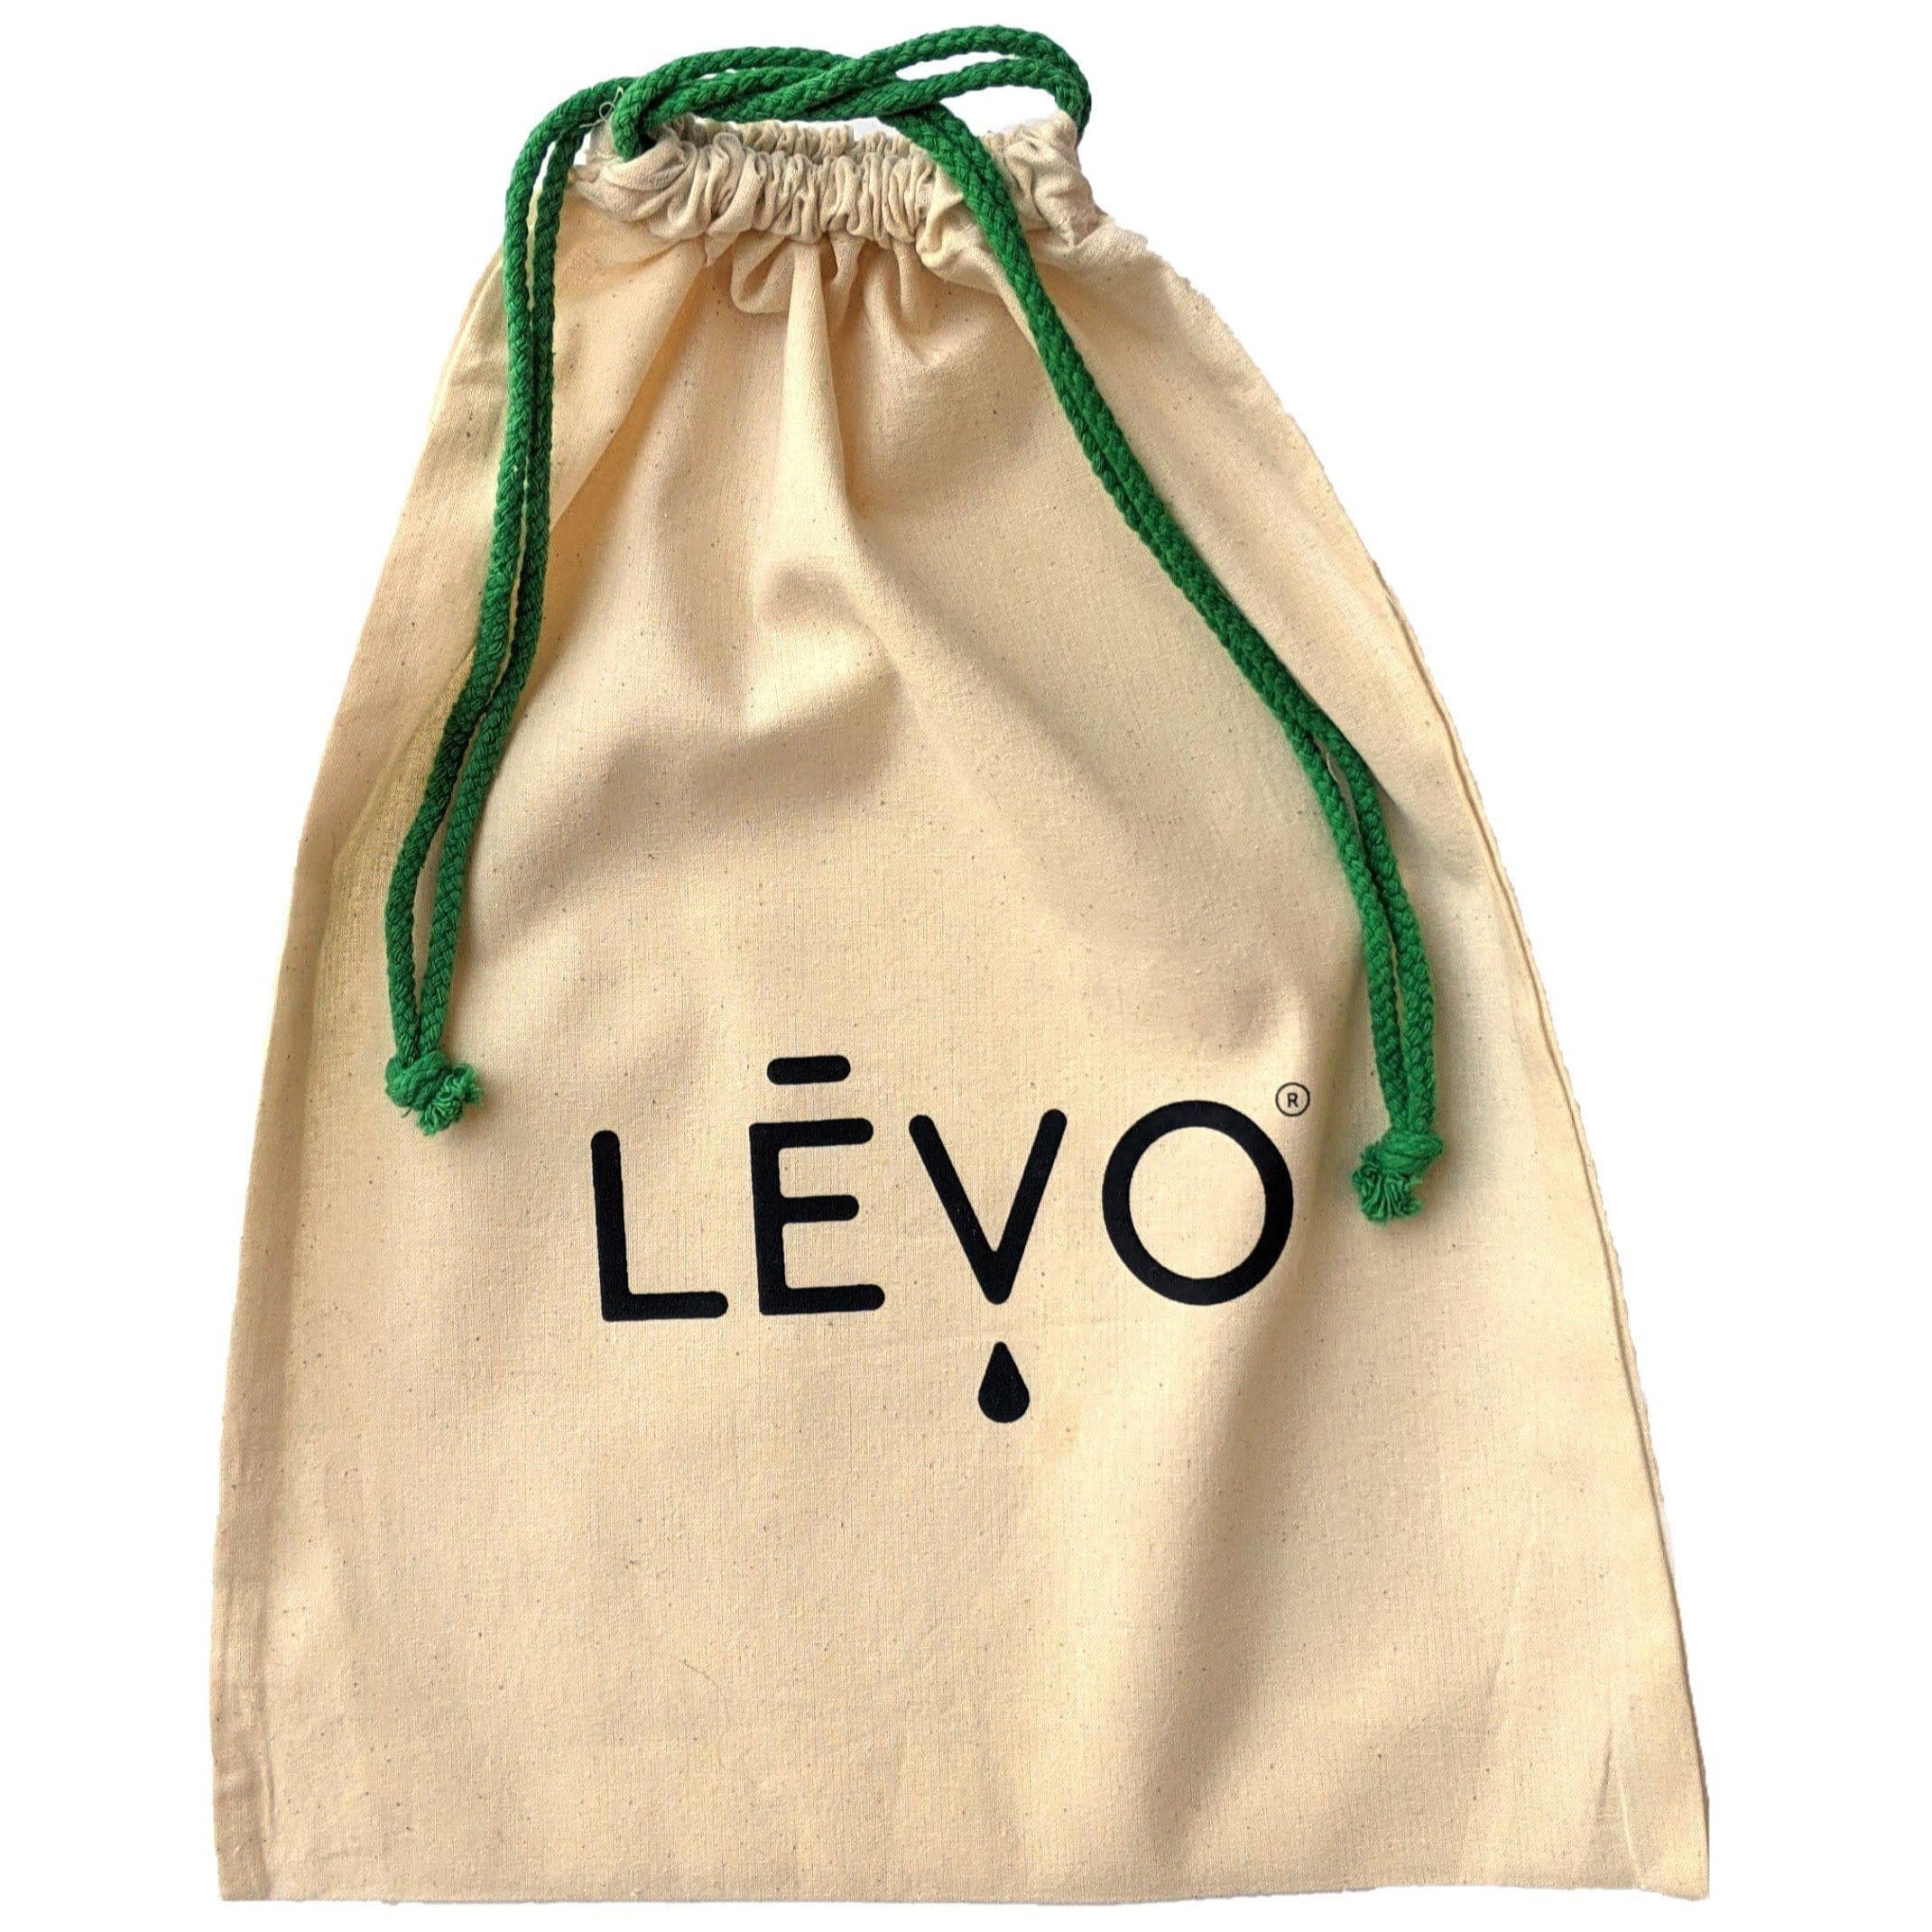 LEVO drawstring bag tied shut